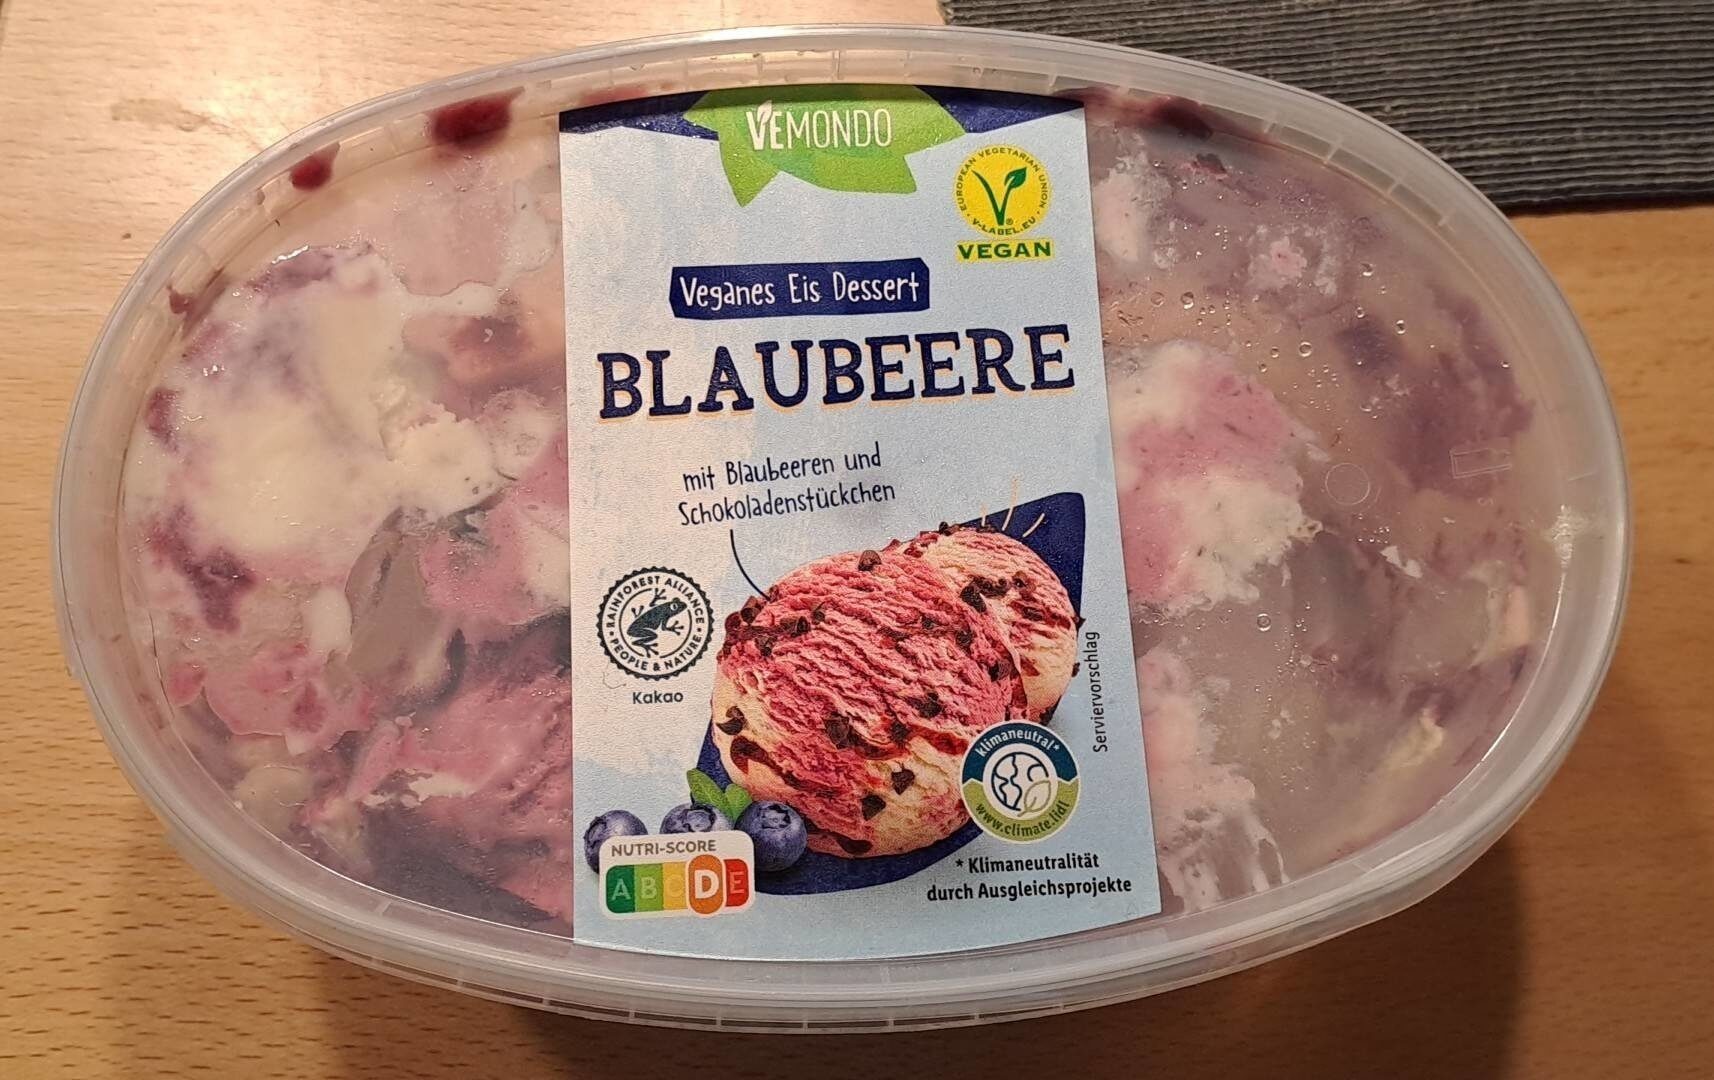 Veganes Eis Dessert Blaubeere - Product - sk